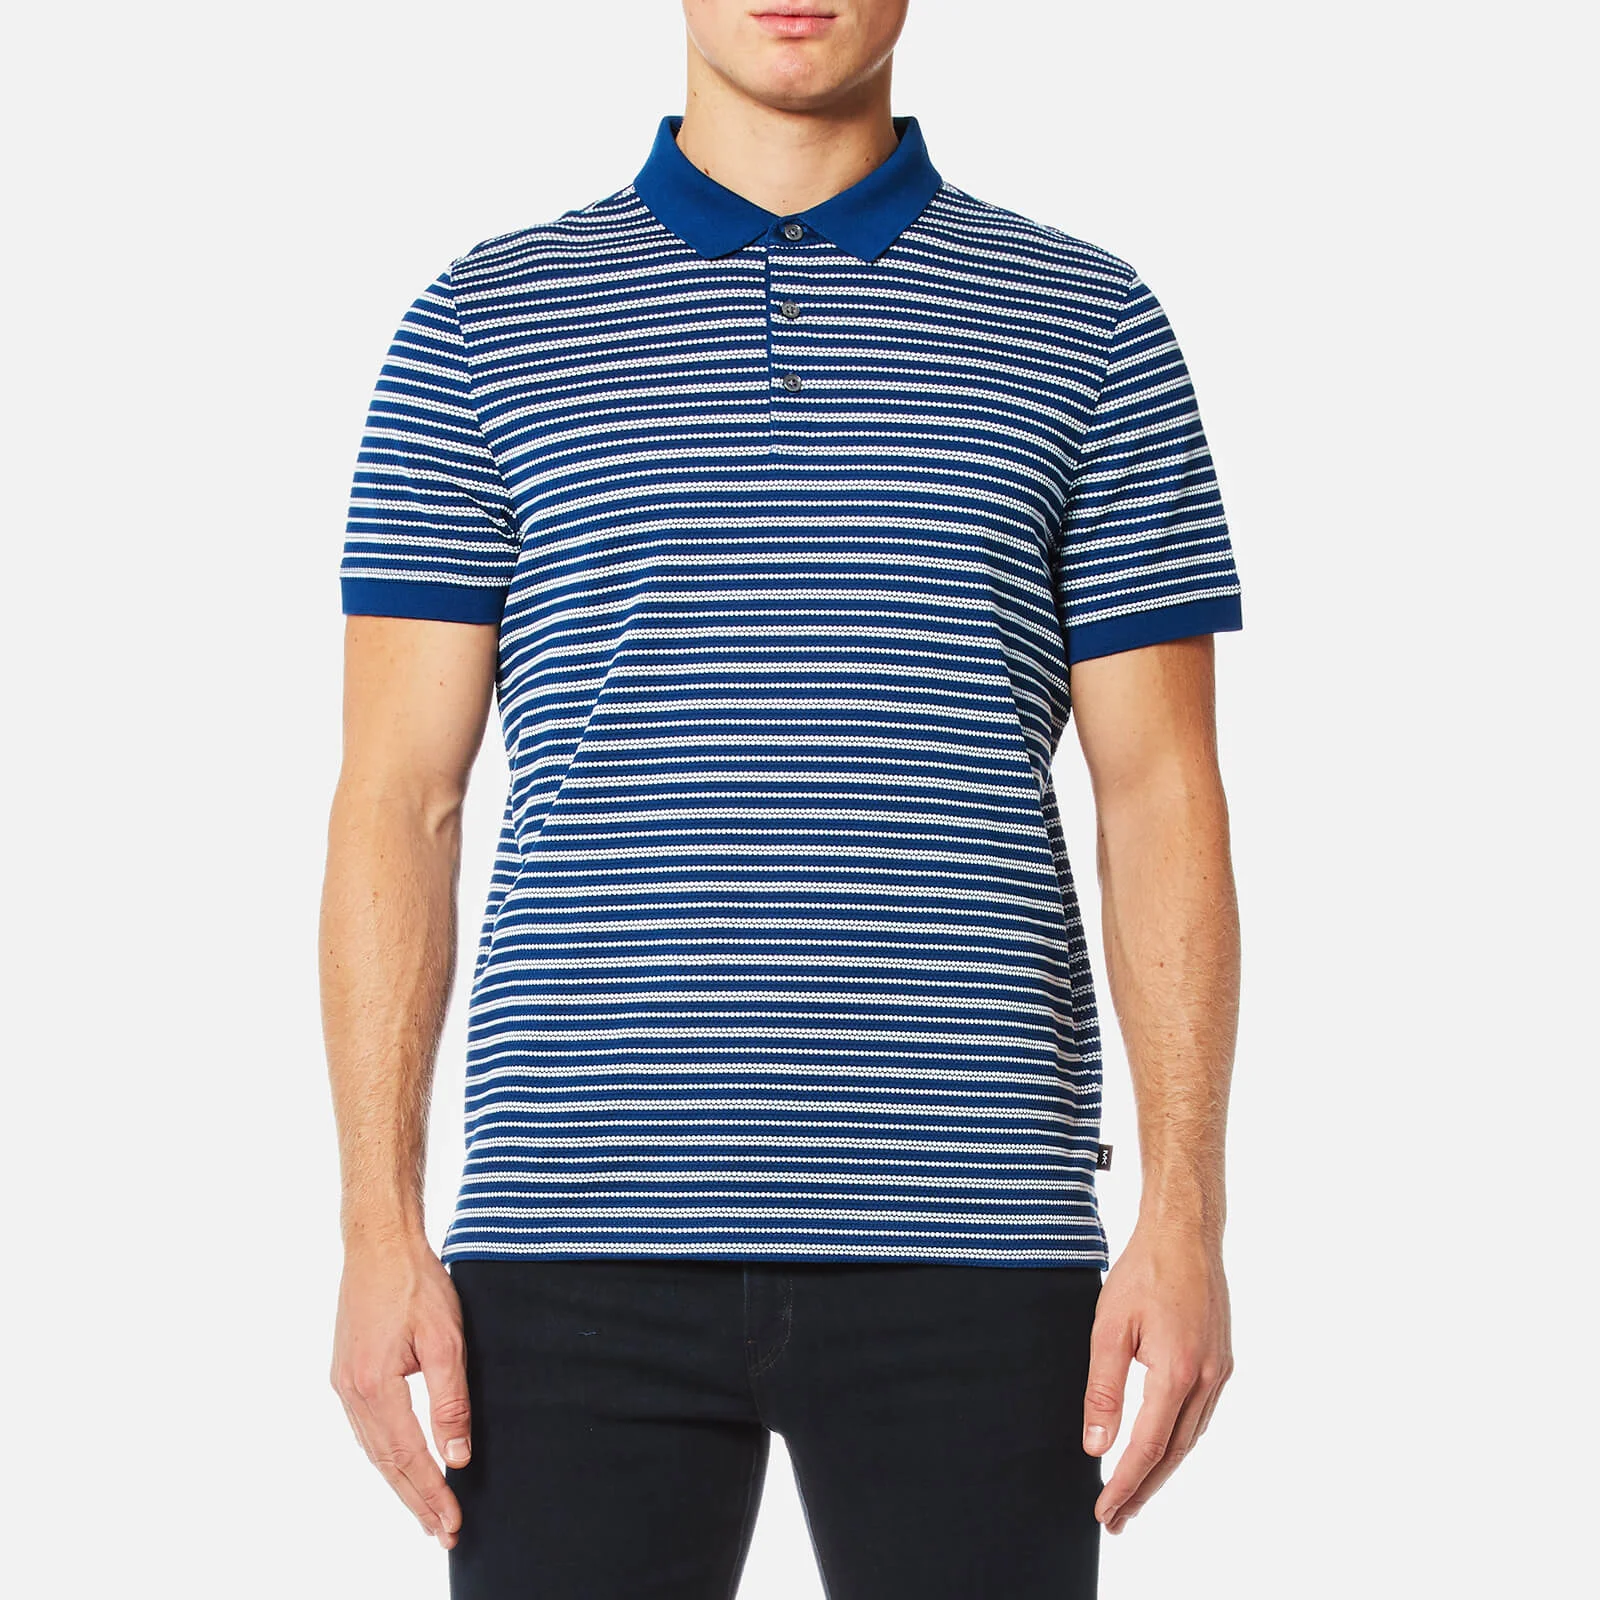 Michael Kors Men's Stripe Jacquard Polo Shirt - Marine Blue Image 1